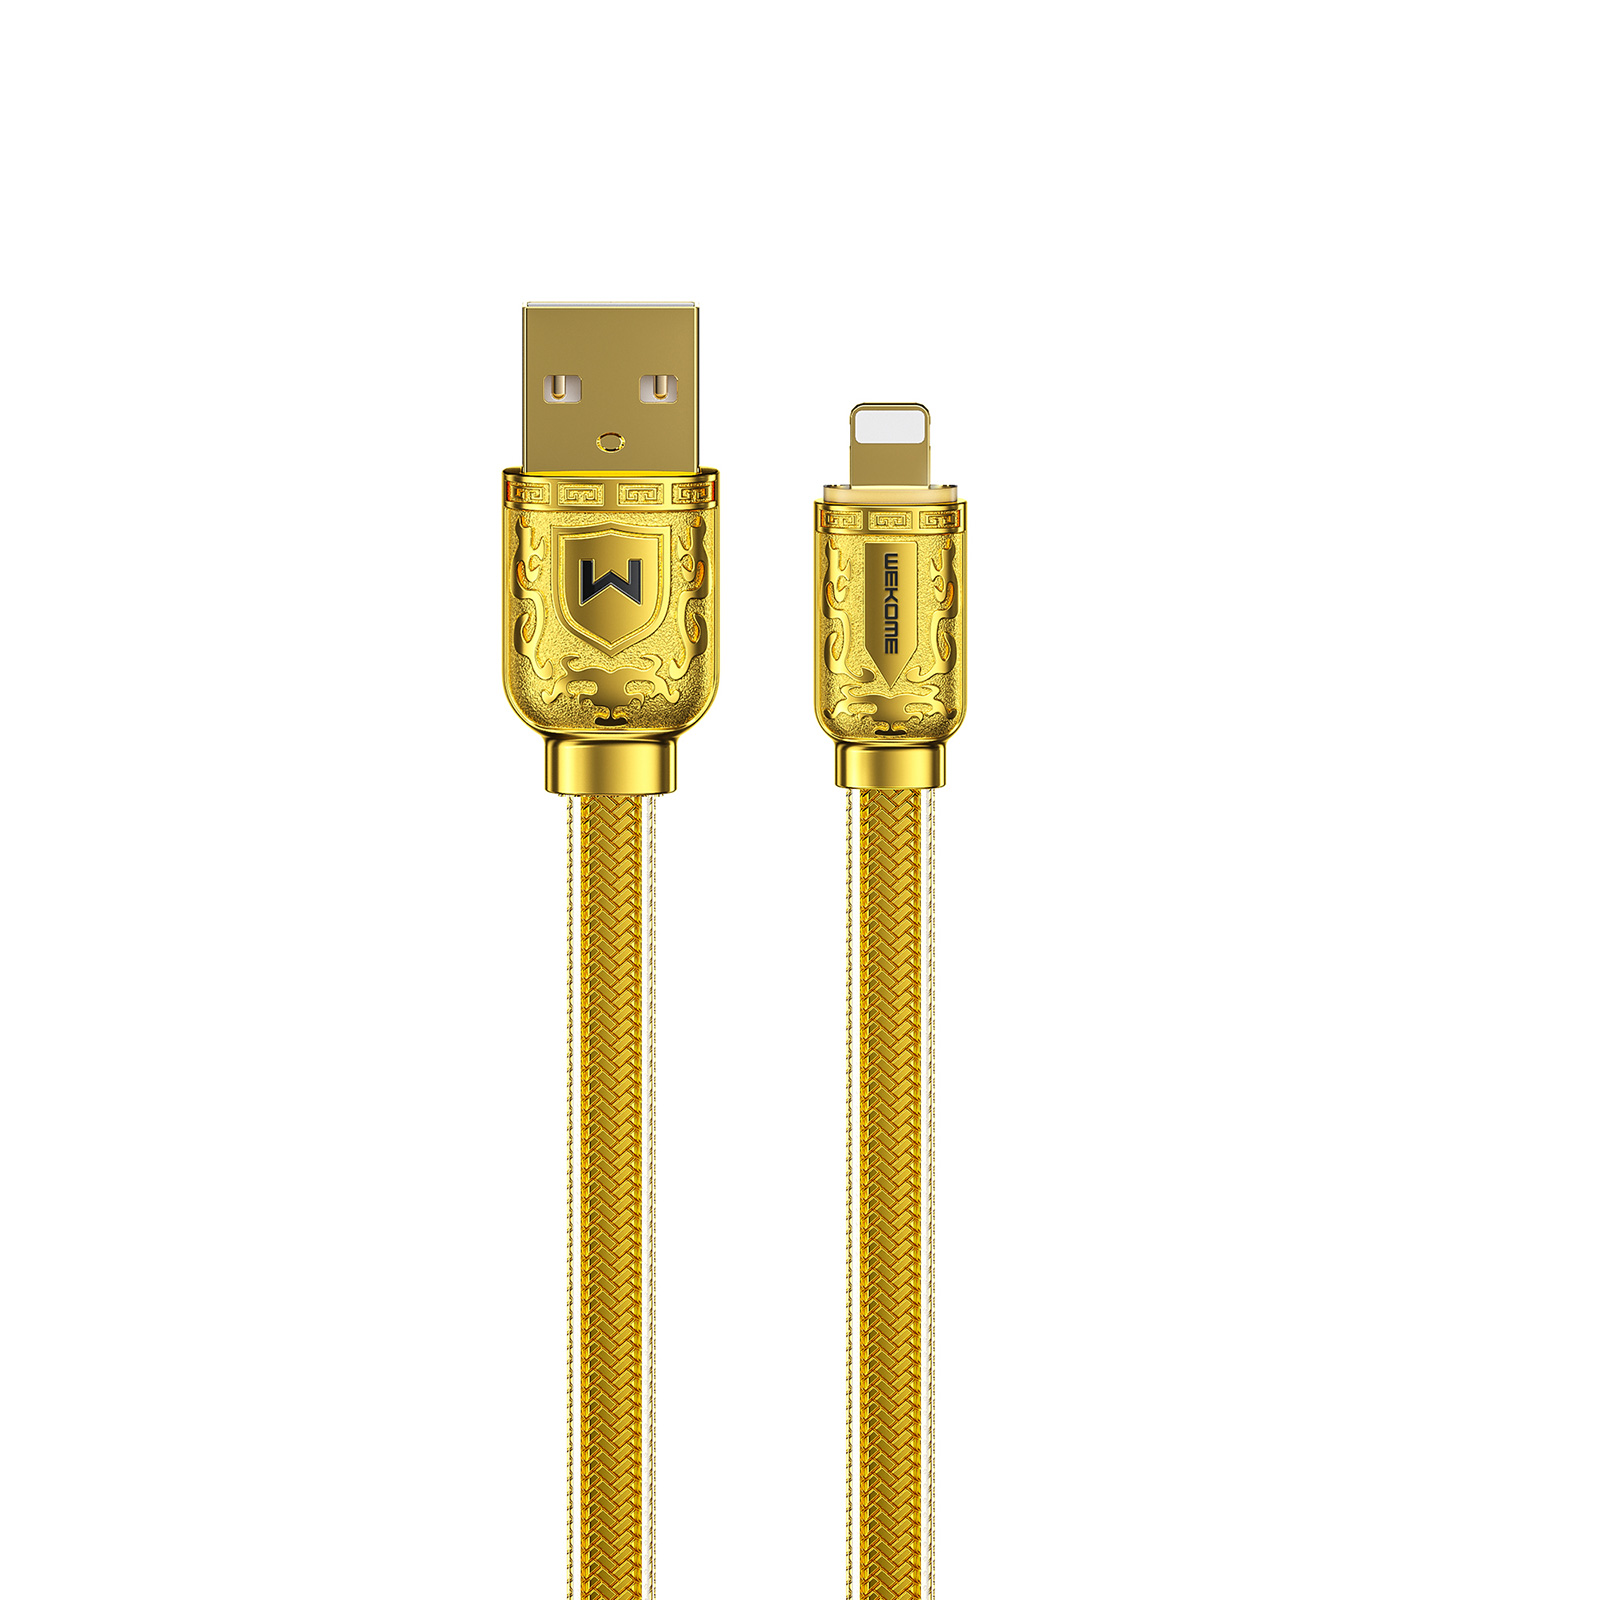 WEKOME WDC-163 SAKIN Golden Cable